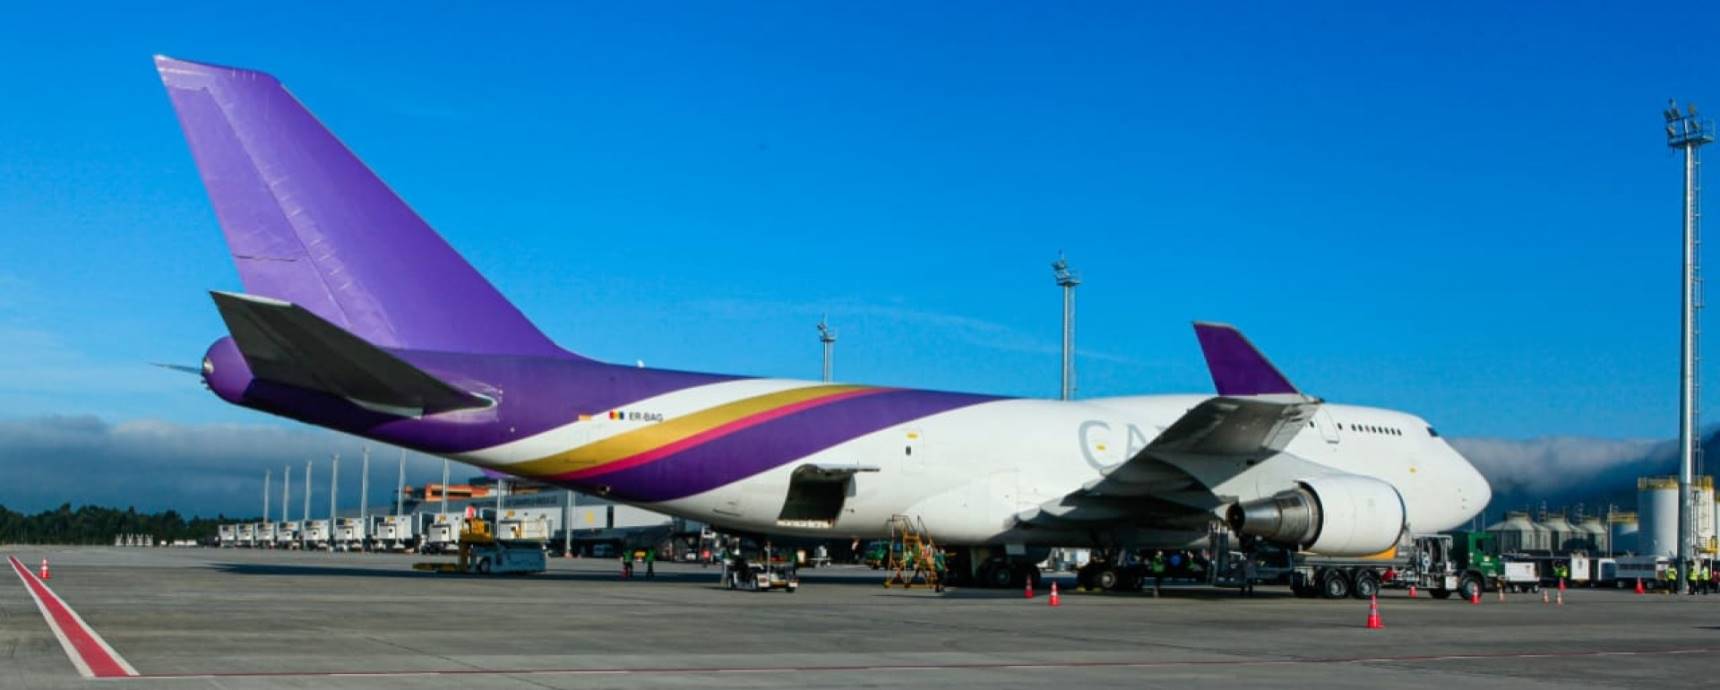 Der internationale Flughafen Florianópolis empfängt zum ersten Mal in seiner Geschichte ein Frachtflugzeug vom Typ Boeing 747-400F